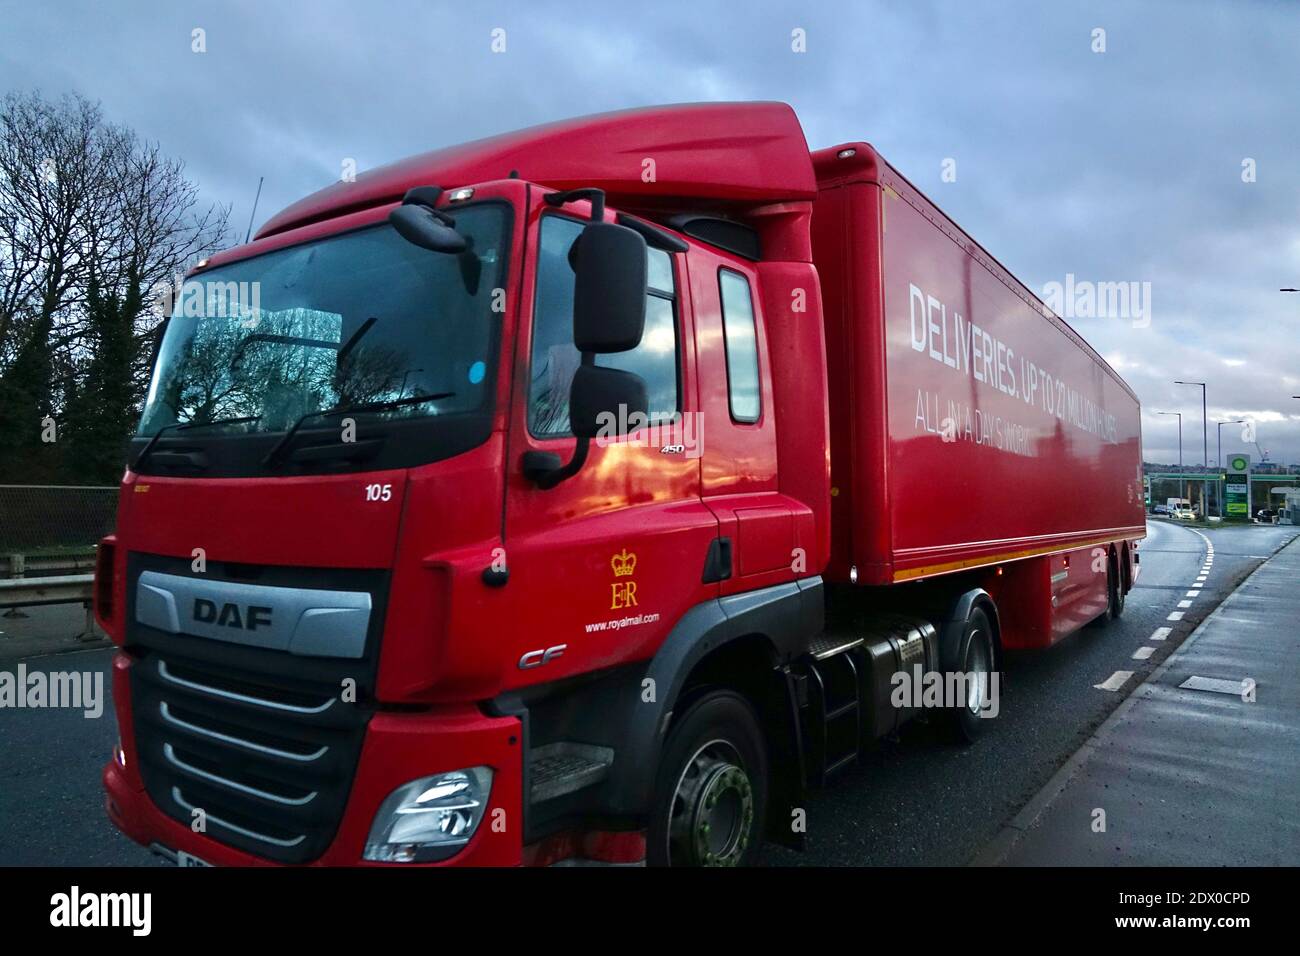 Les camions Royal Mail livrant des messages pendant la période la plus achalandée de l'année pour la livraison de colis et de lettres pendant les fêtes de Noël. Banque D'Images